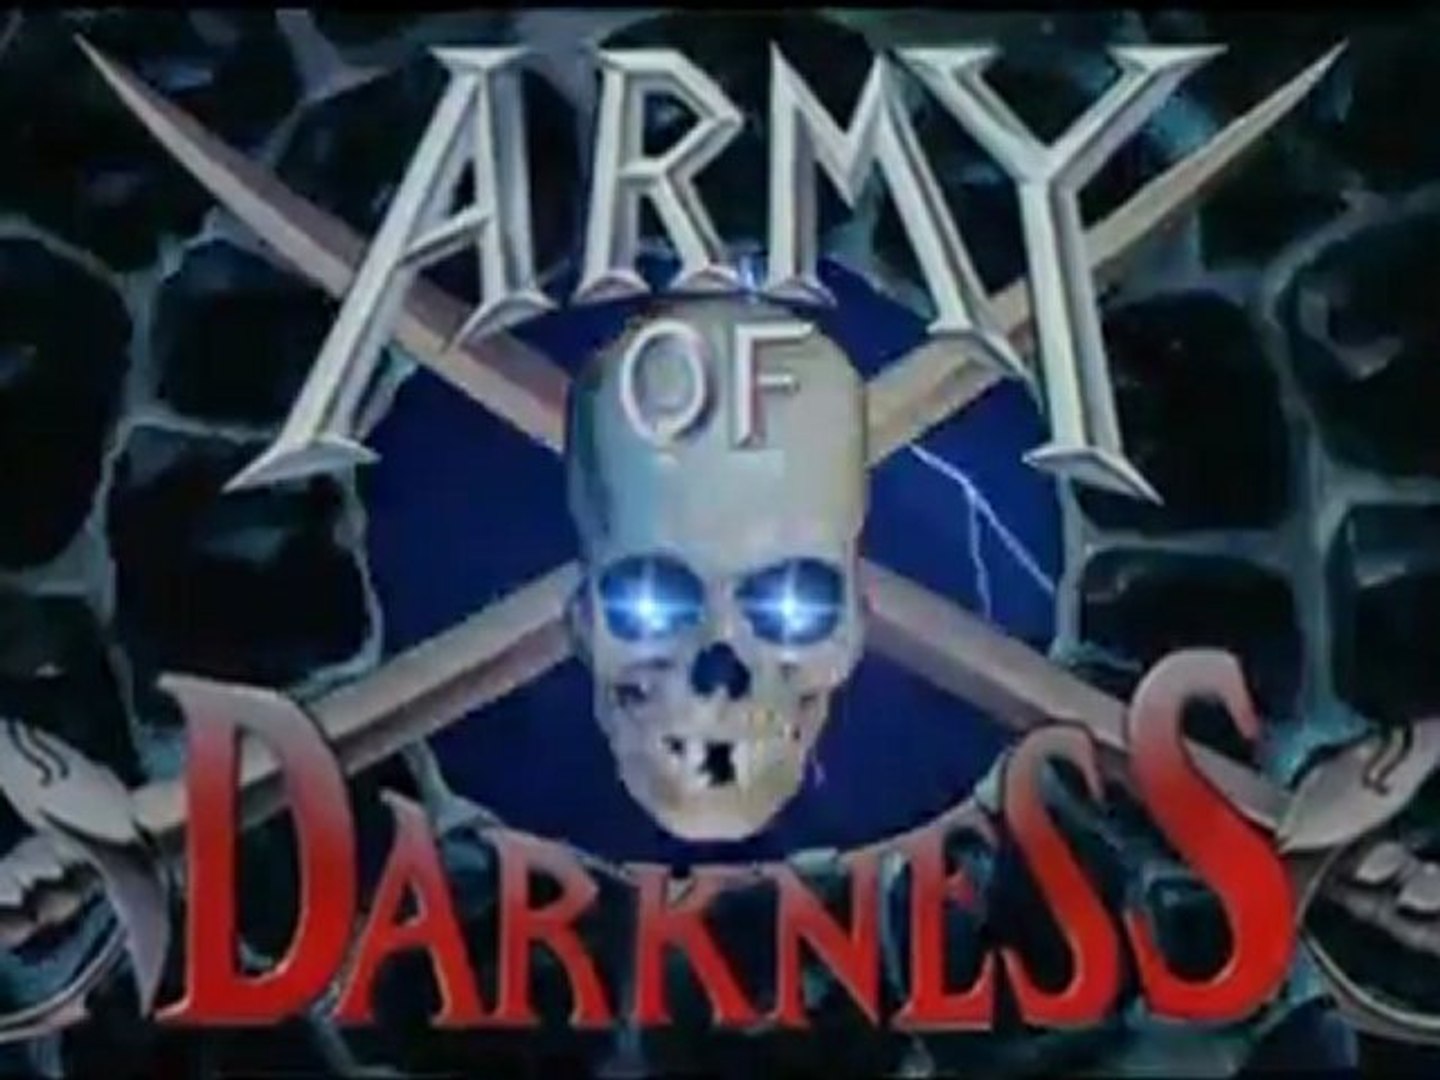 Evil Dead 3: Army of Darkness - Logo by xerlientt on DeviantArt